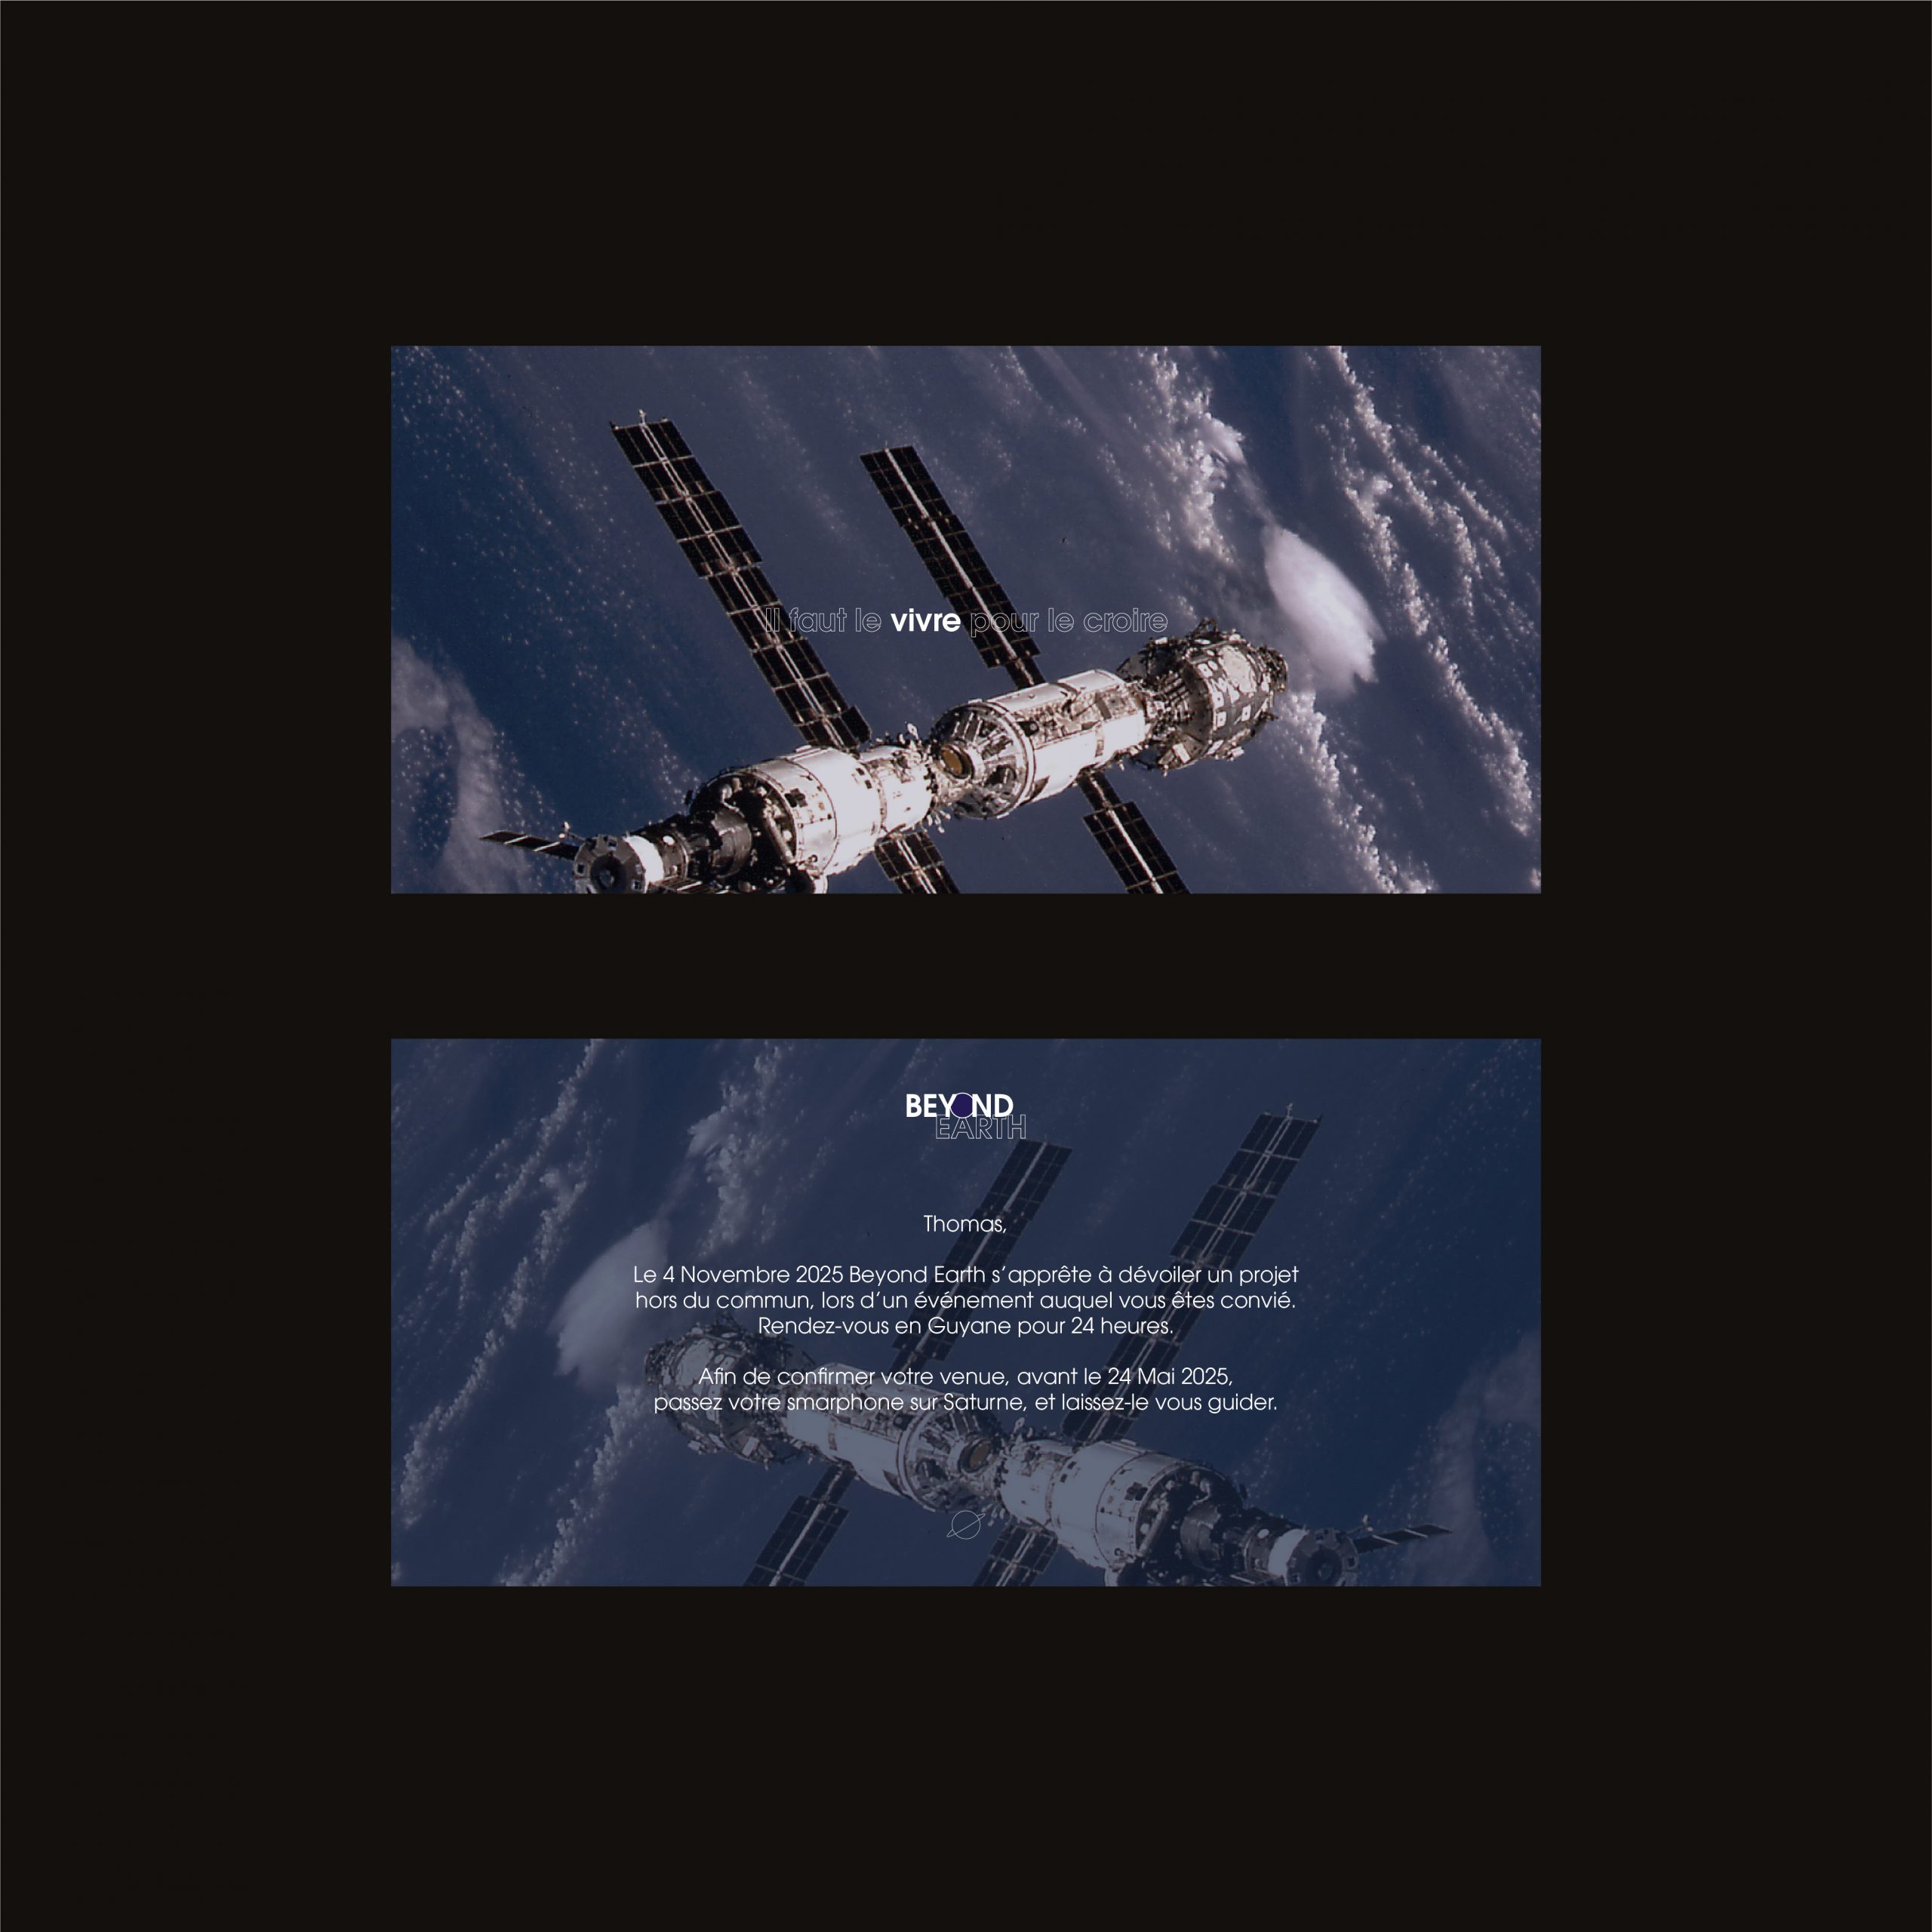 Carton d'invitation numéro 3, utilisant la phrase "Il faut le vivre pour le croire" ainsi qu'une photographie de l'ISS en fond. Le verso du carton est un texte invitant la personne concernée à un évènement.